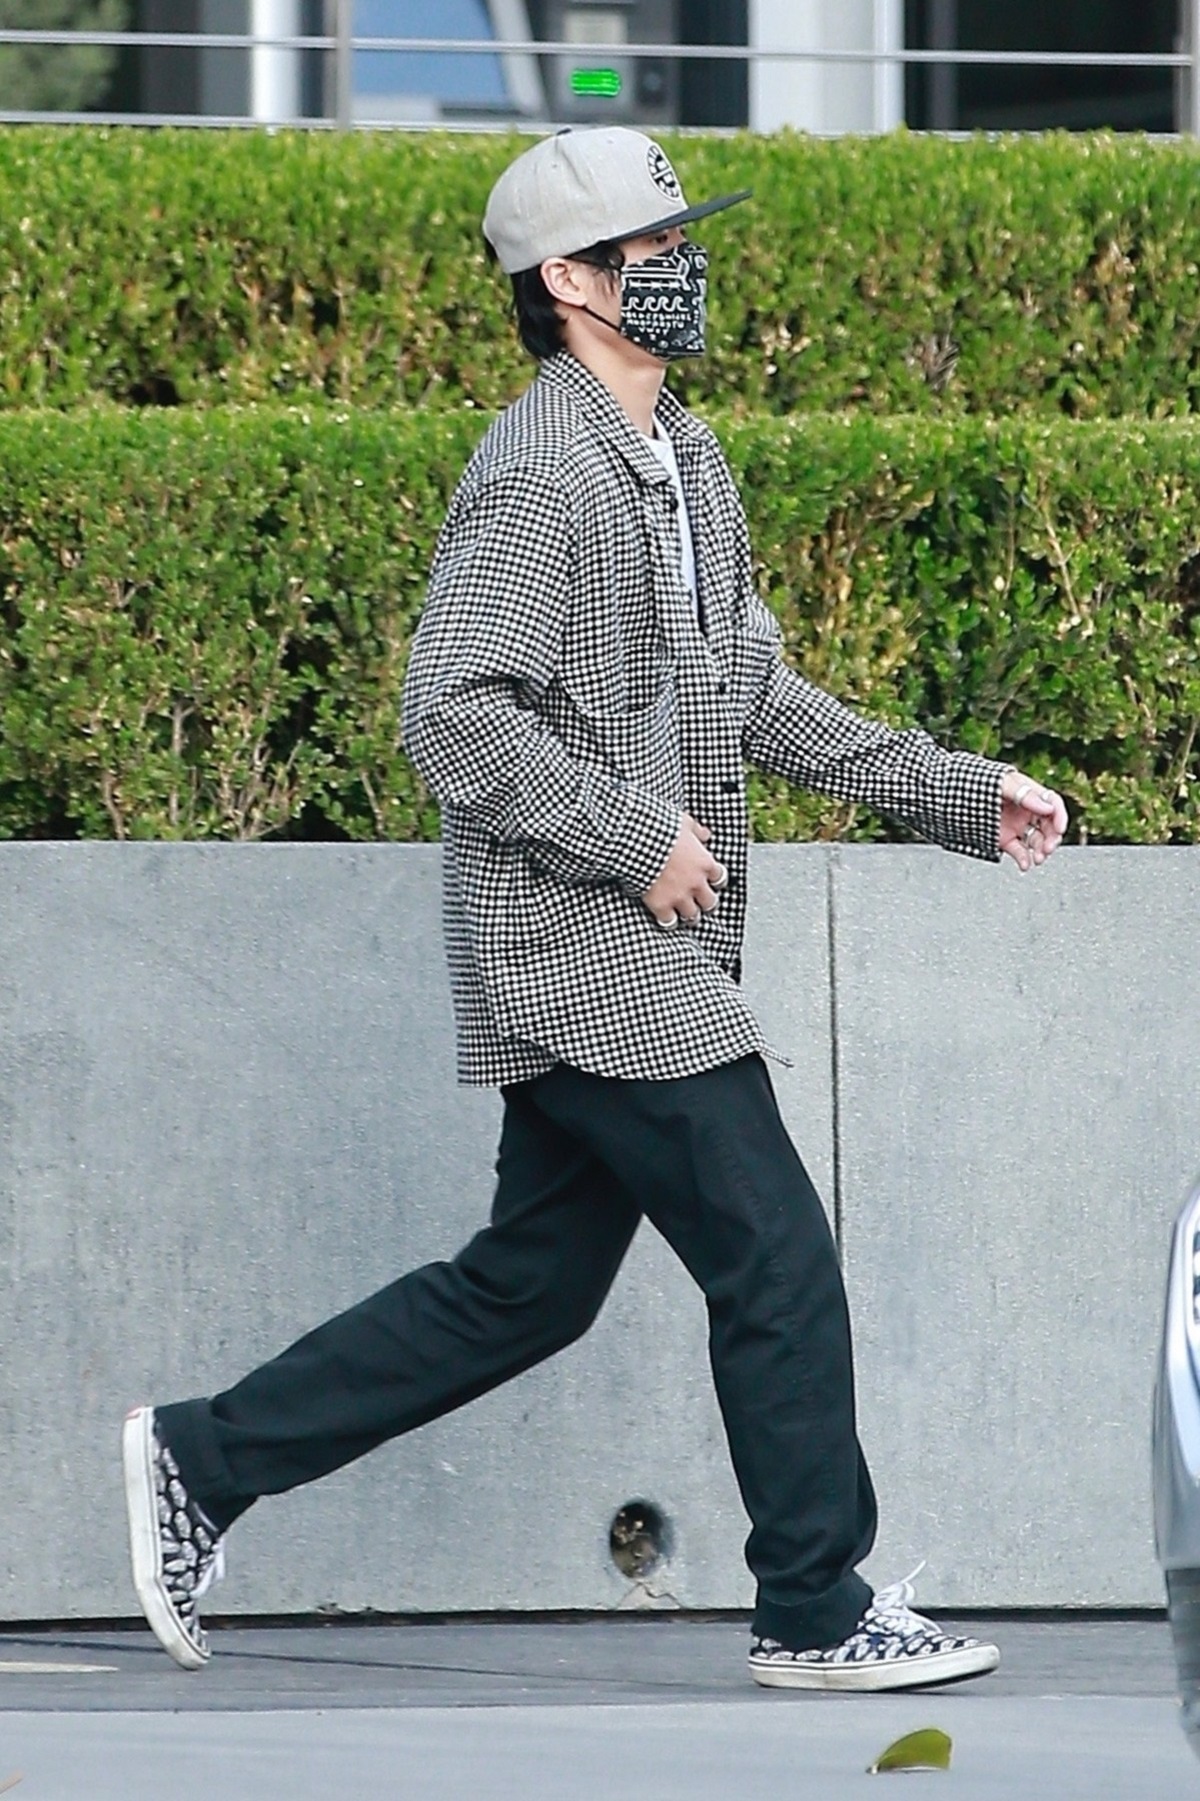 Pax Jolie Pitt îmbrăcat în blugi negri și o cămașă gri în carouri în timp ce poartă o șapcă și mască de protecție pe străzile din Los Angeles